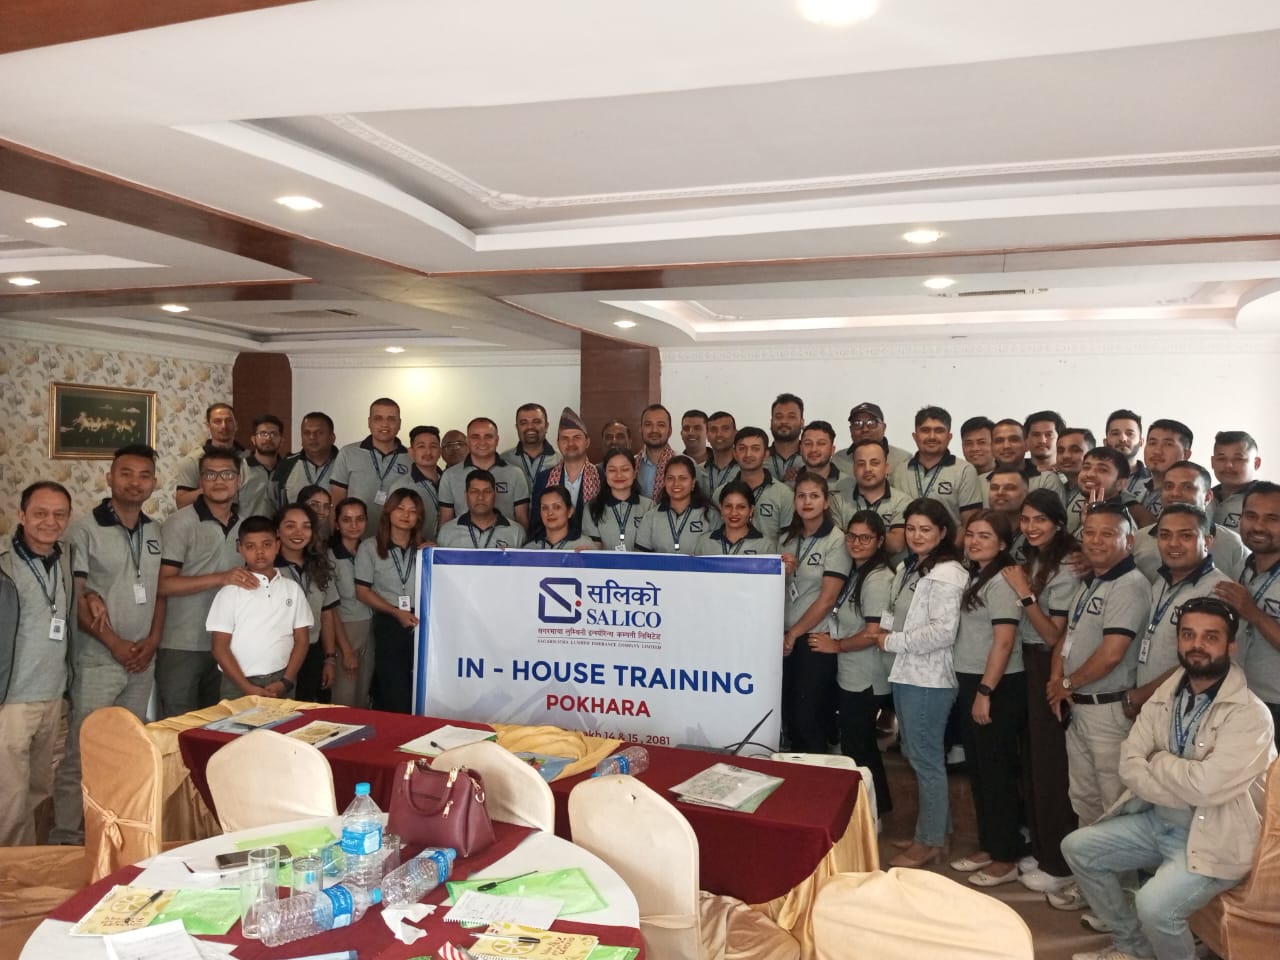 कर्मचारीको दक्षता अभिबृद्धिका लागि सगरमाथा लुम्बिनी इन्स्योरेन्सले गर्यो प्रशिक्षण कार्यक्रम